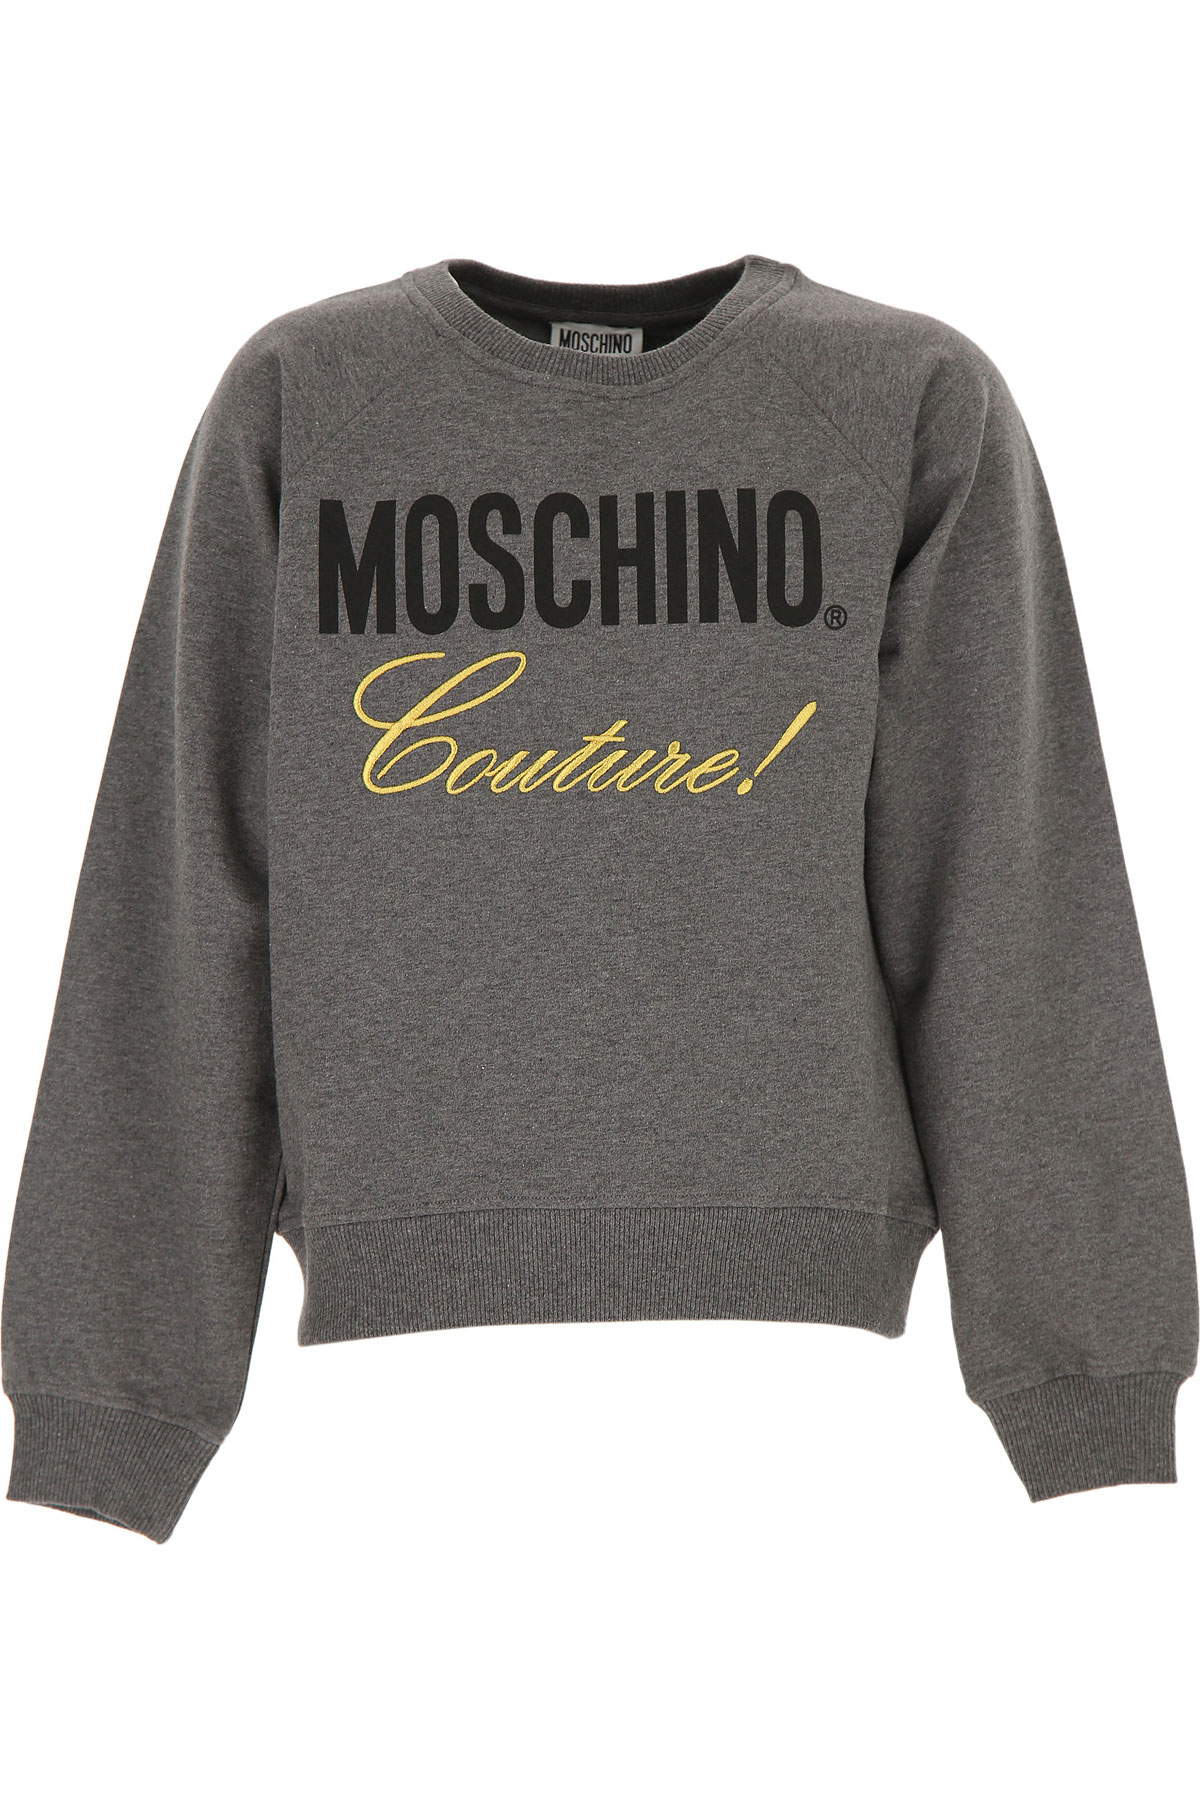 Moschino Kinder Sweatshirt & Kapuzenpullover für Mädchen Günstig im Sale, Dunkelgrau, Baumwolle, 2017, 10Y 14Y 8Y